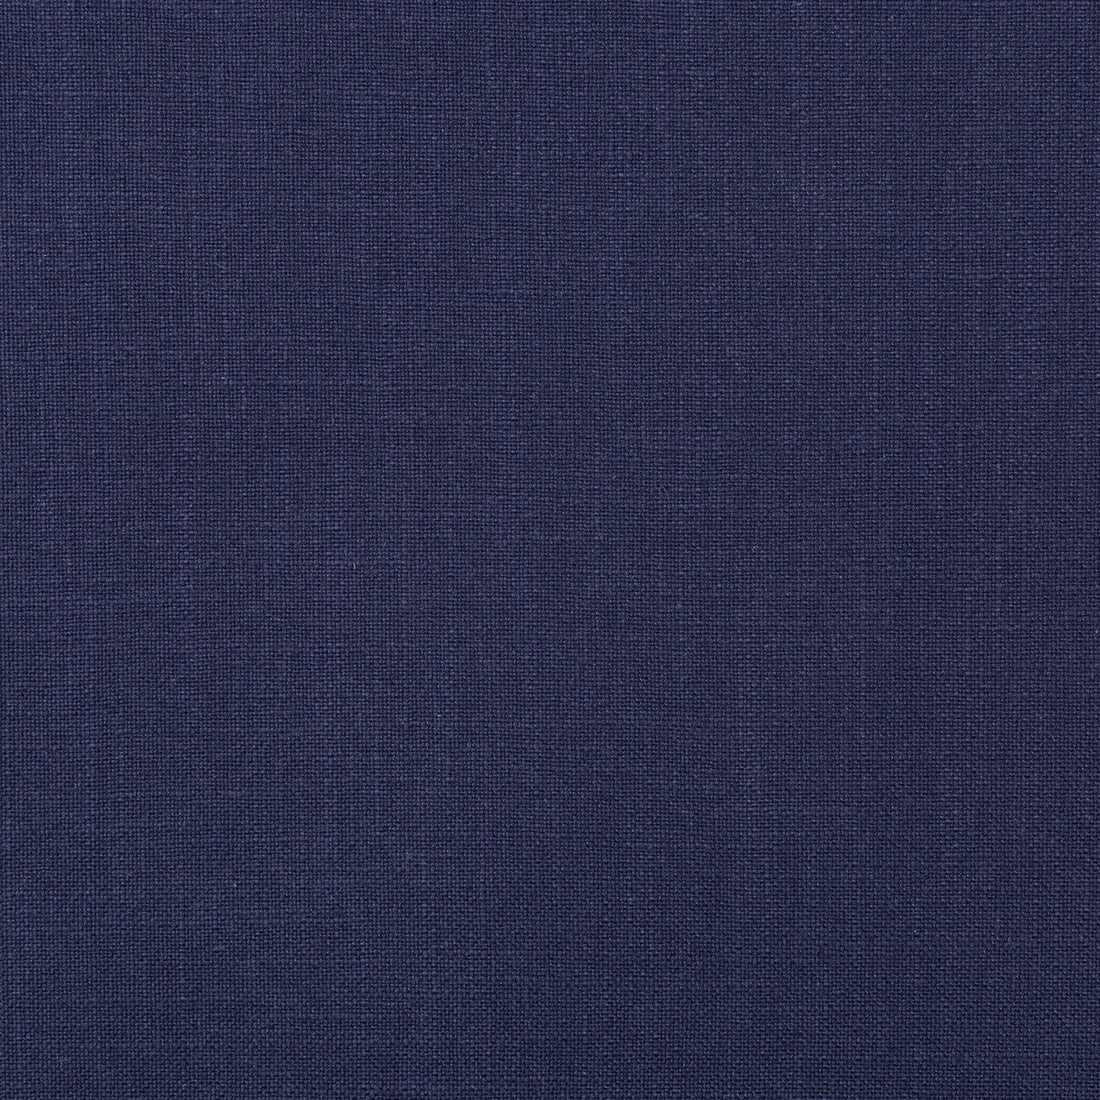 Kravet Basics fabric in 35783-50 color - pattern 35783.50.0 - by Kravet Basics